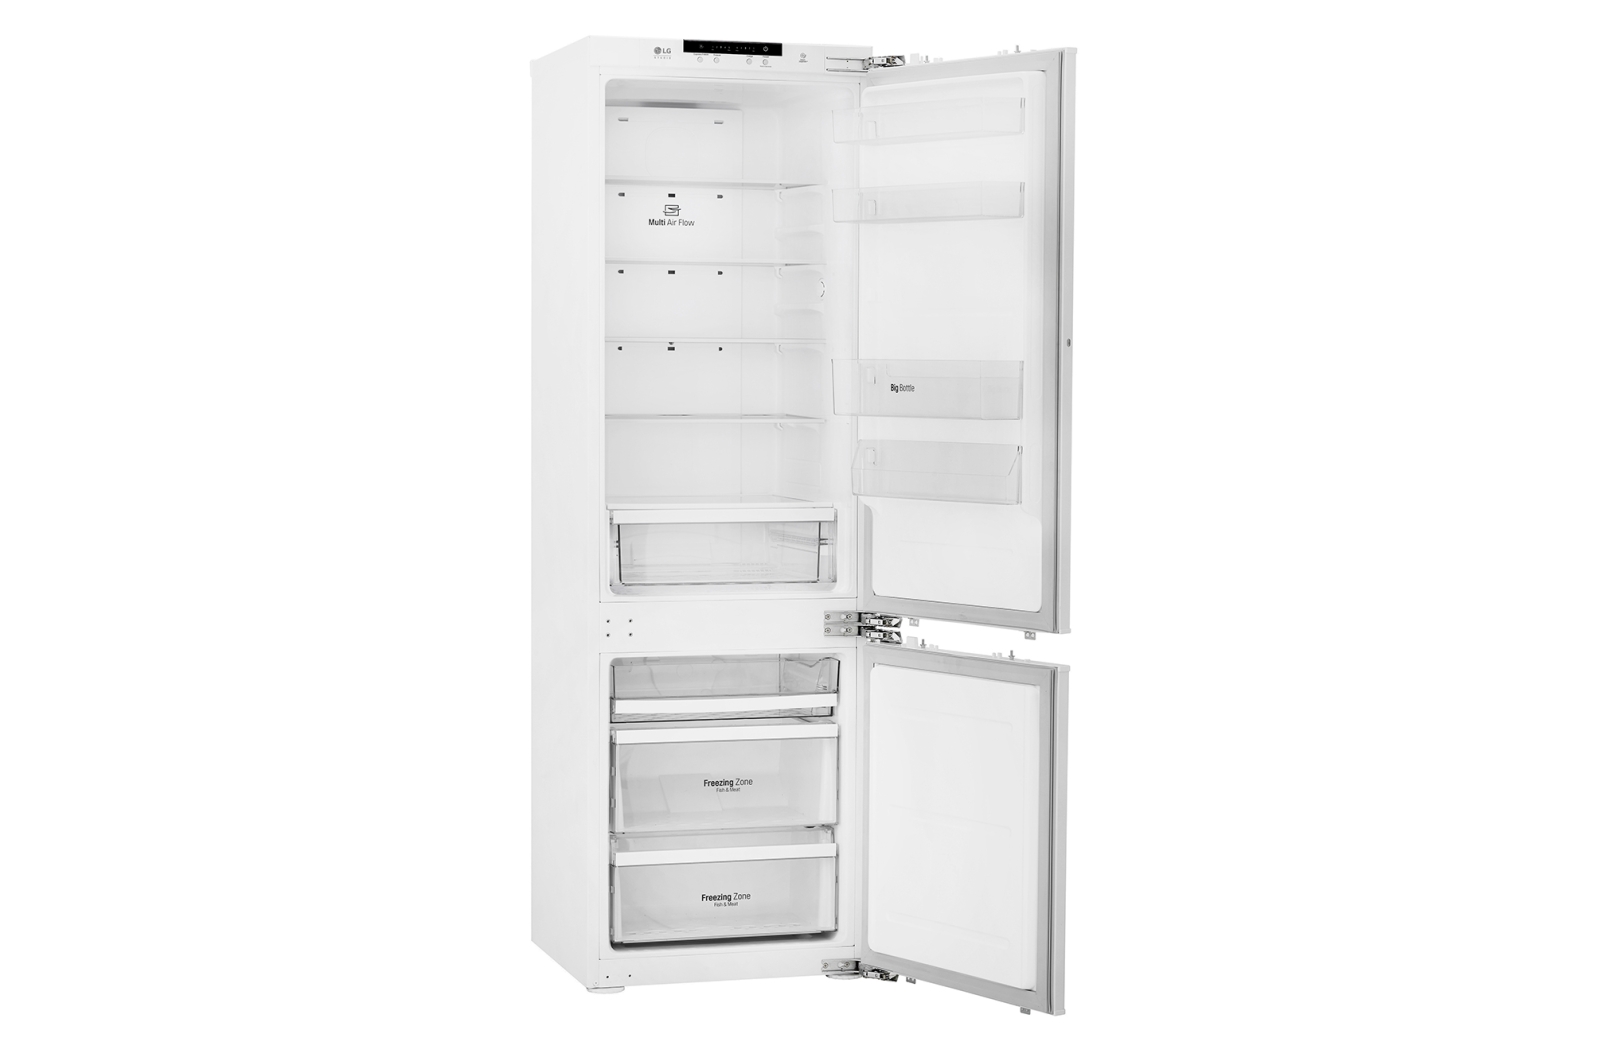 Холодильник LG GR-N266LLD